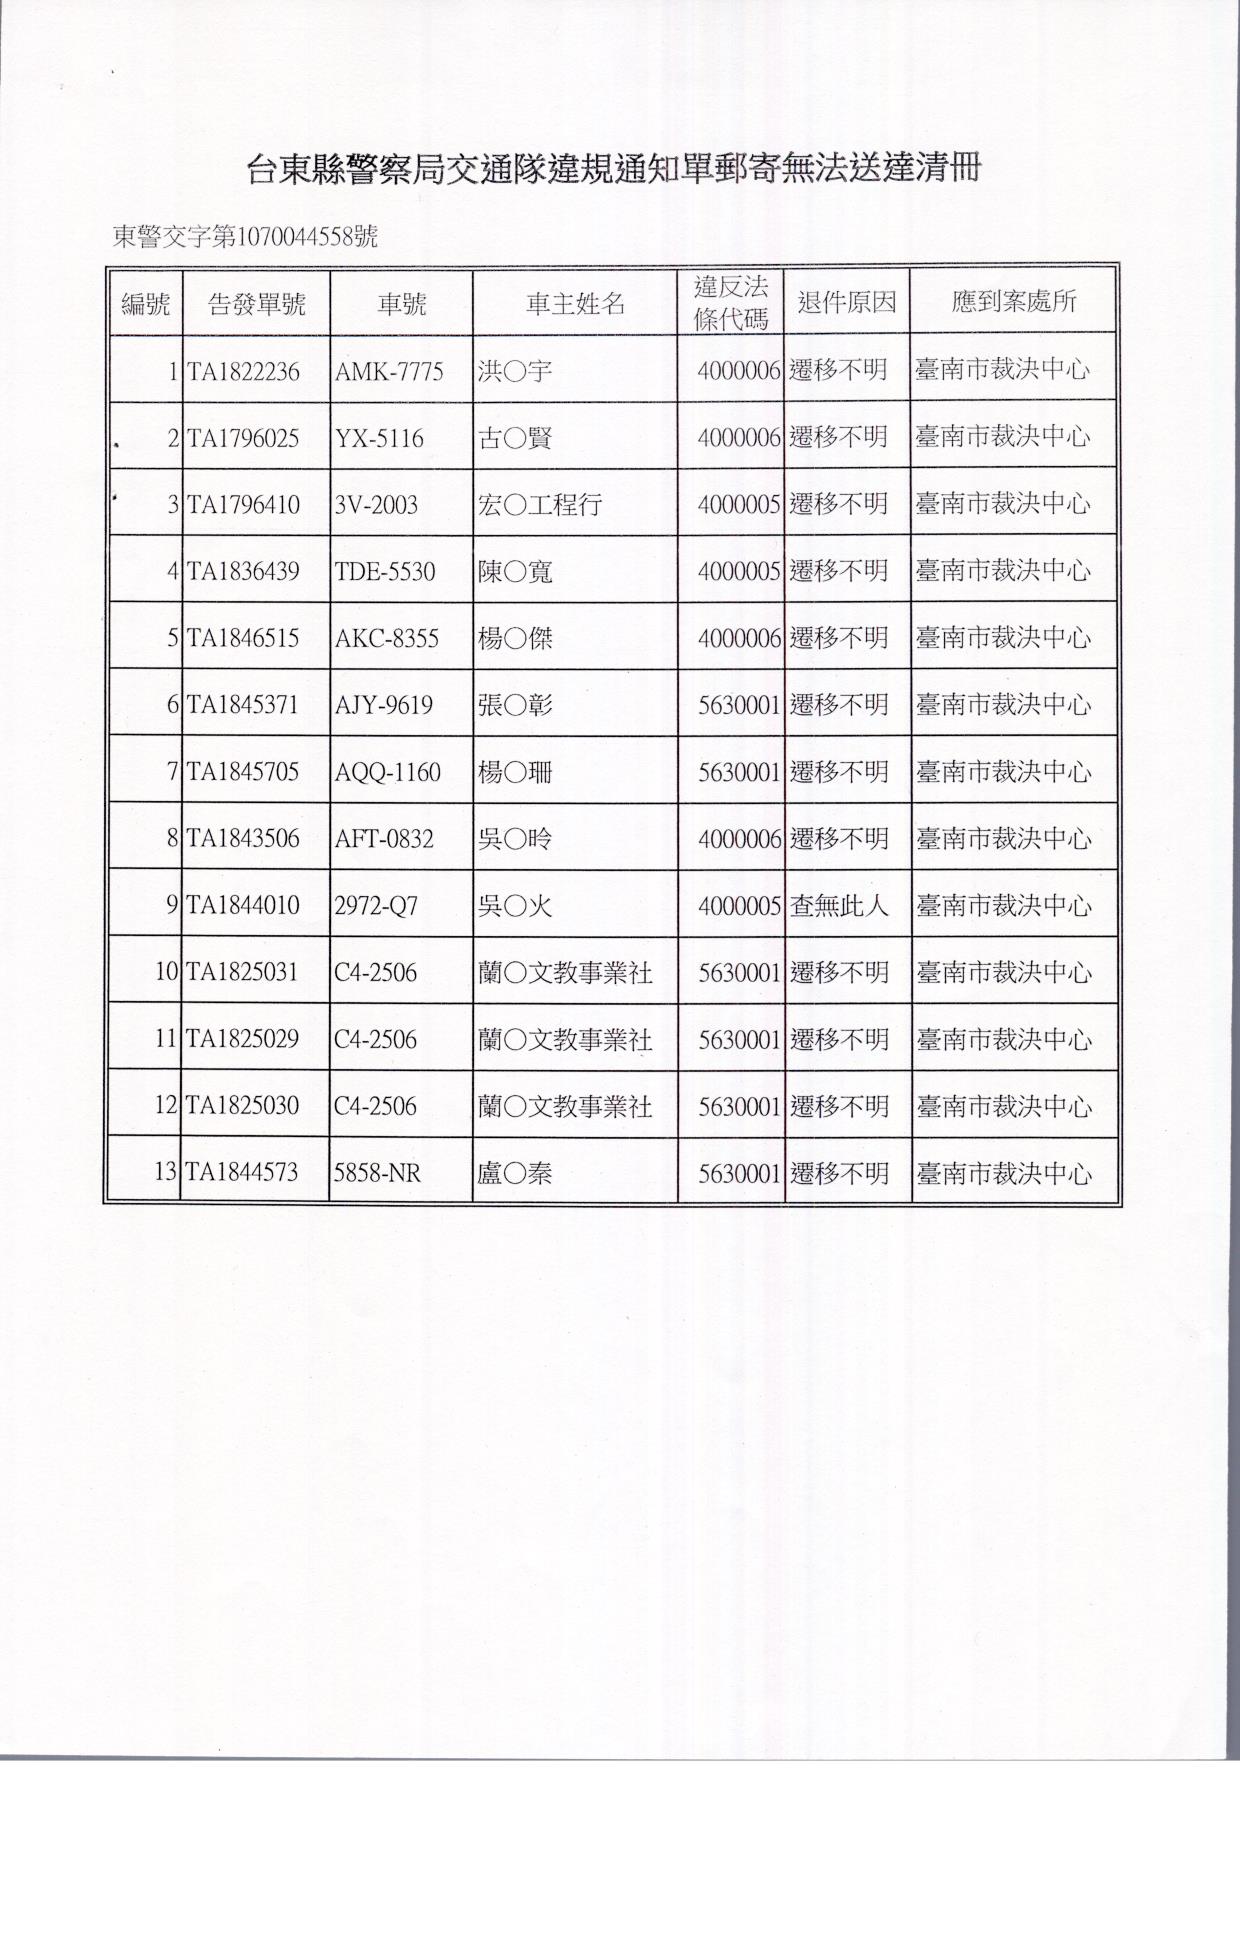 公告本局舉發洪o宇等13名違反道路交通管理事件公示送達案